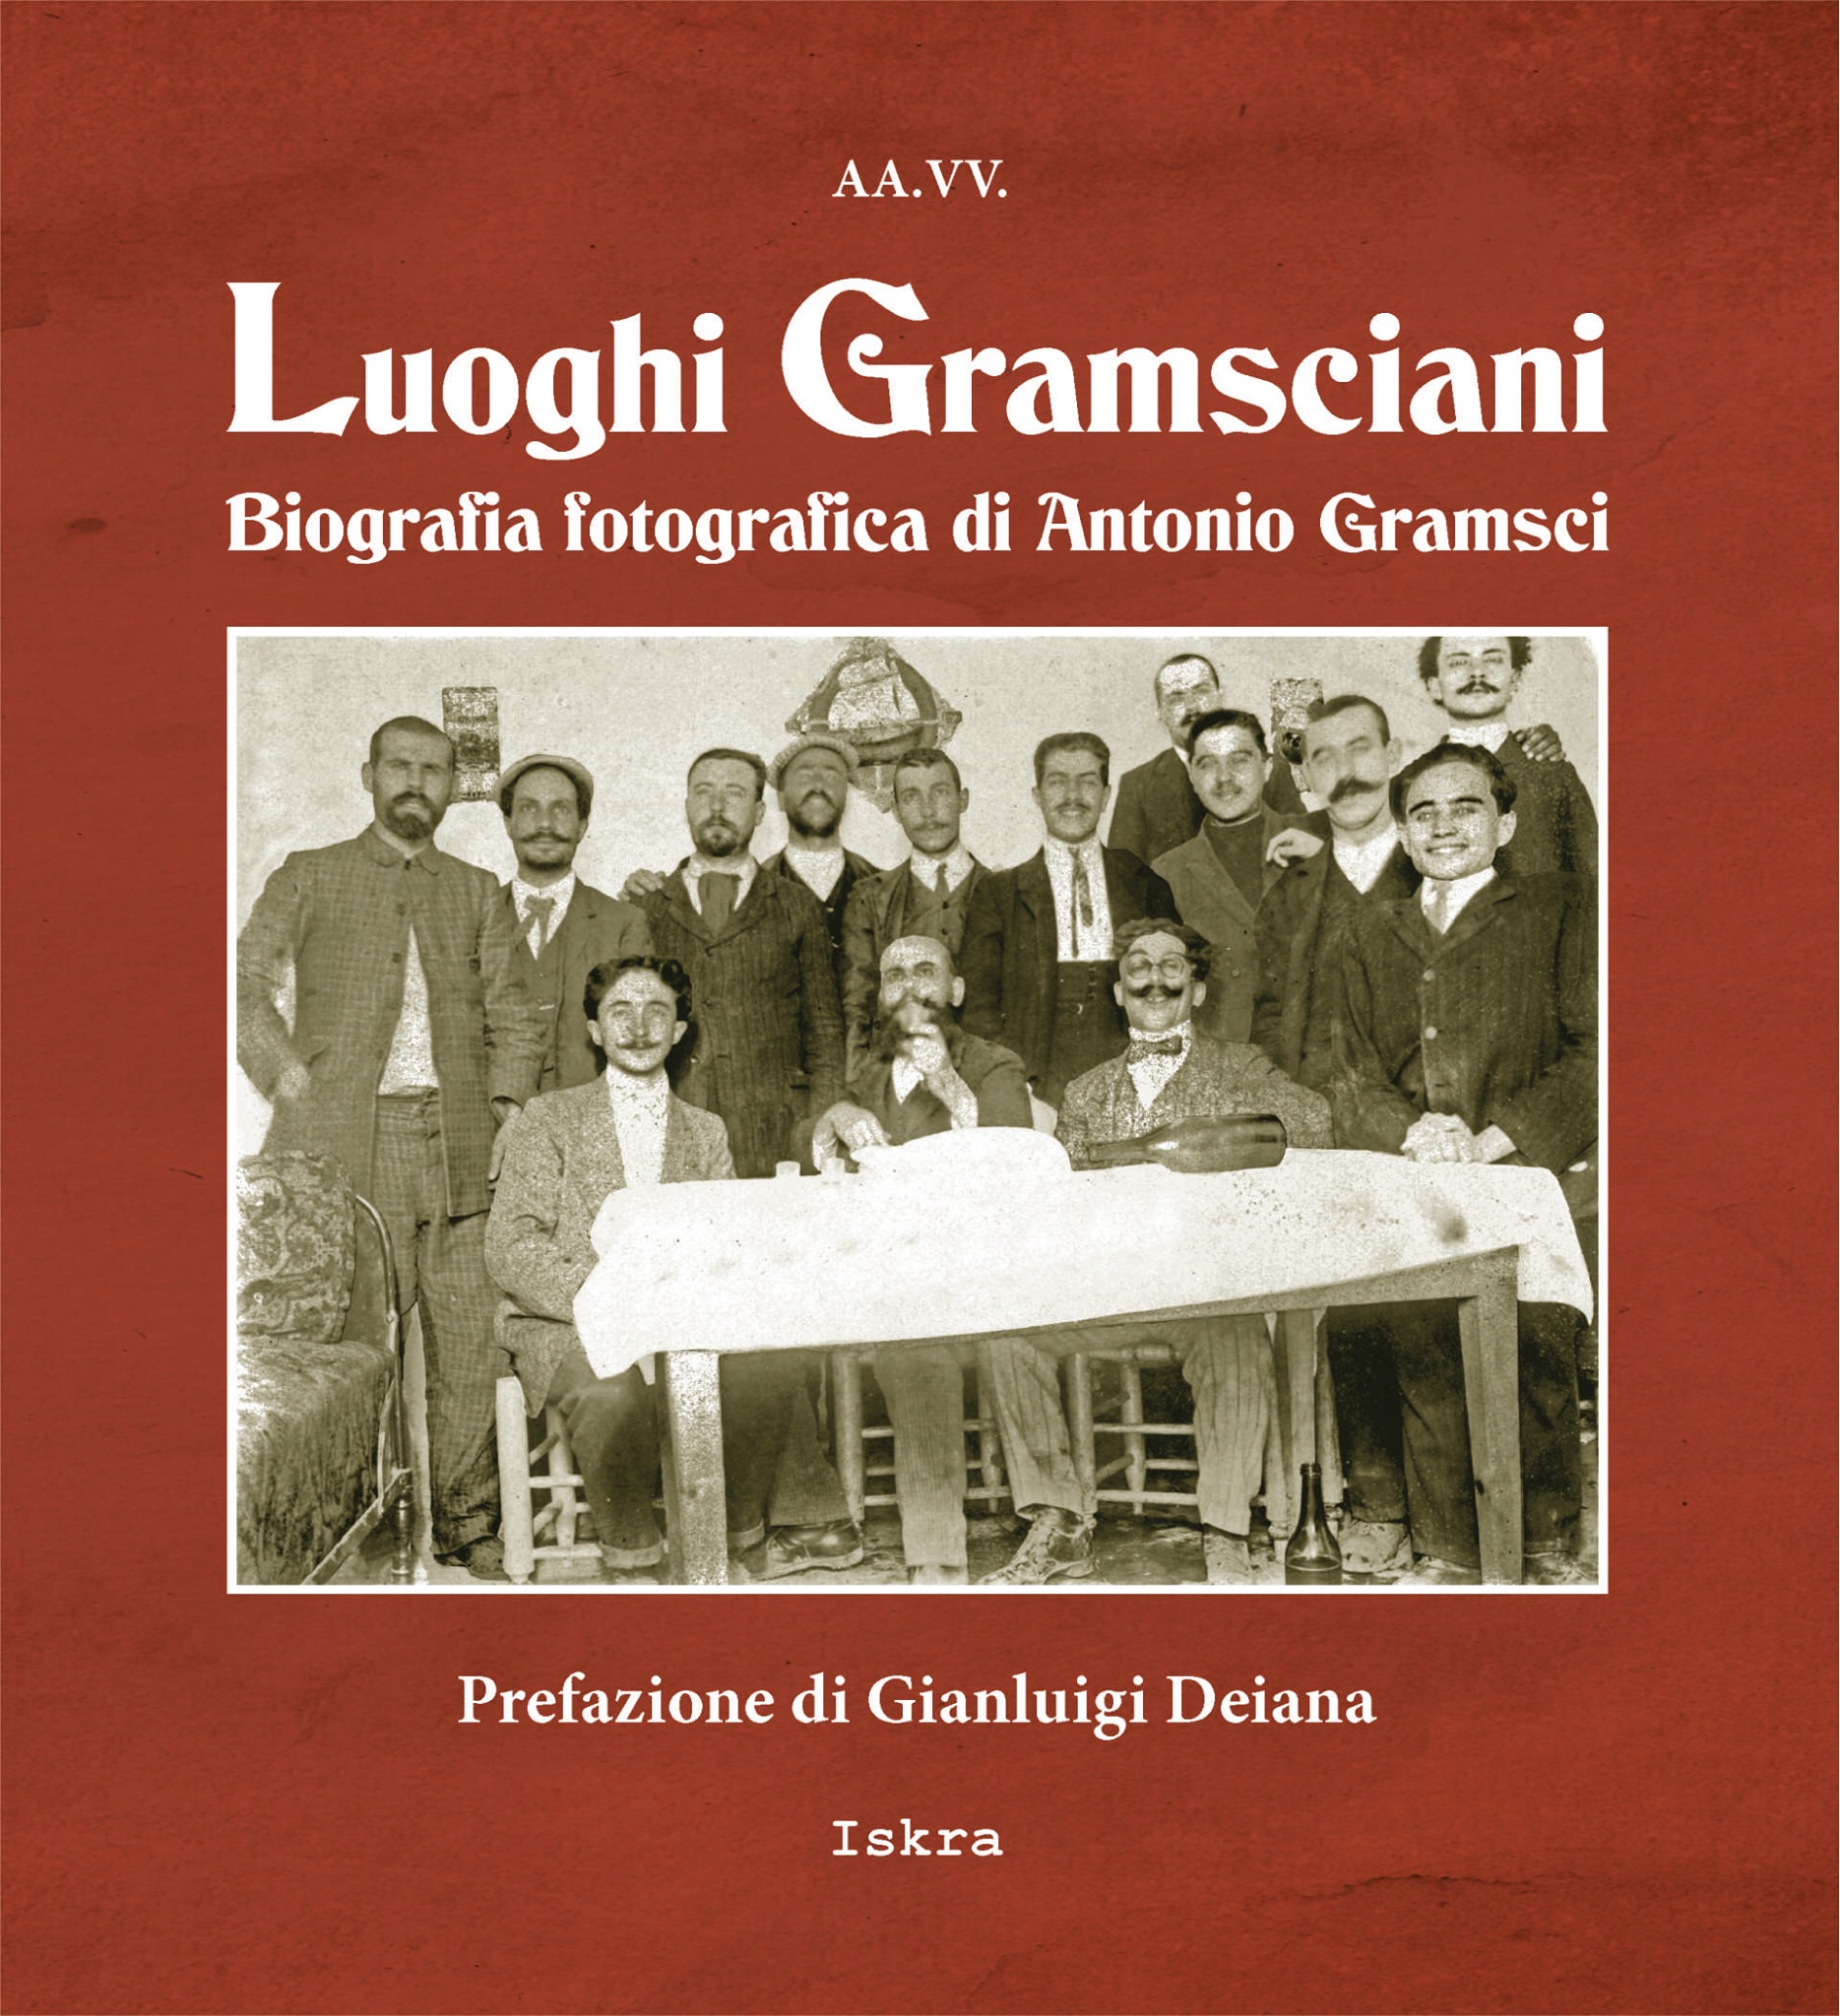 LUOGHI GRAMSCIANI. Biografia fotografica di Antonio Gramsci